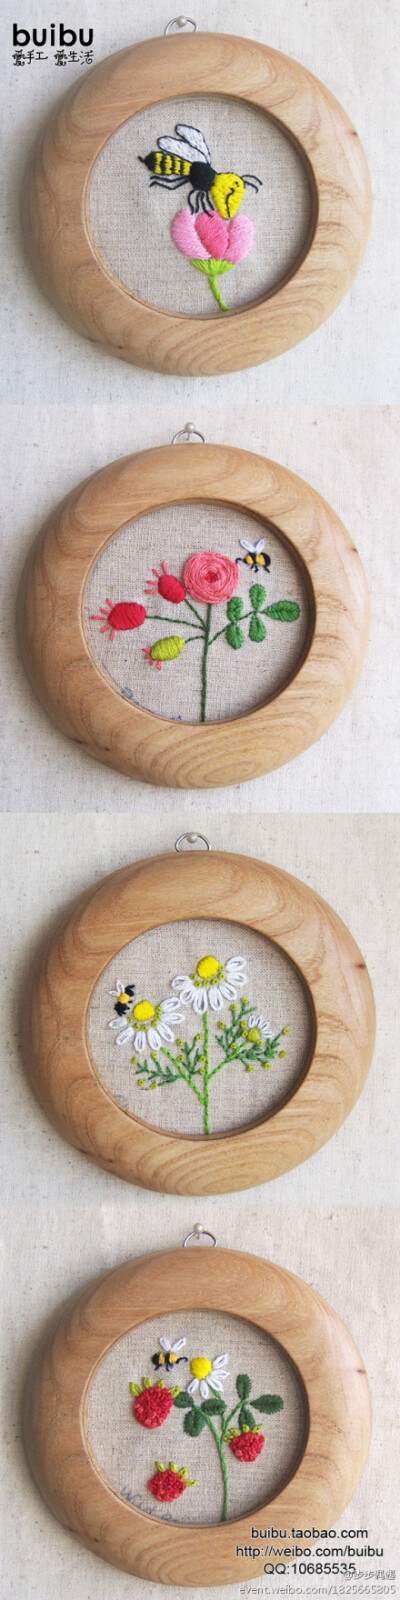 手绣壁挂--为我绽放的花儿——纯手工刺绣的花儿，配以实木圆相框，组成一组独特的壁挂…… ~。~刺绣材料包：http://buibu.taobao.com